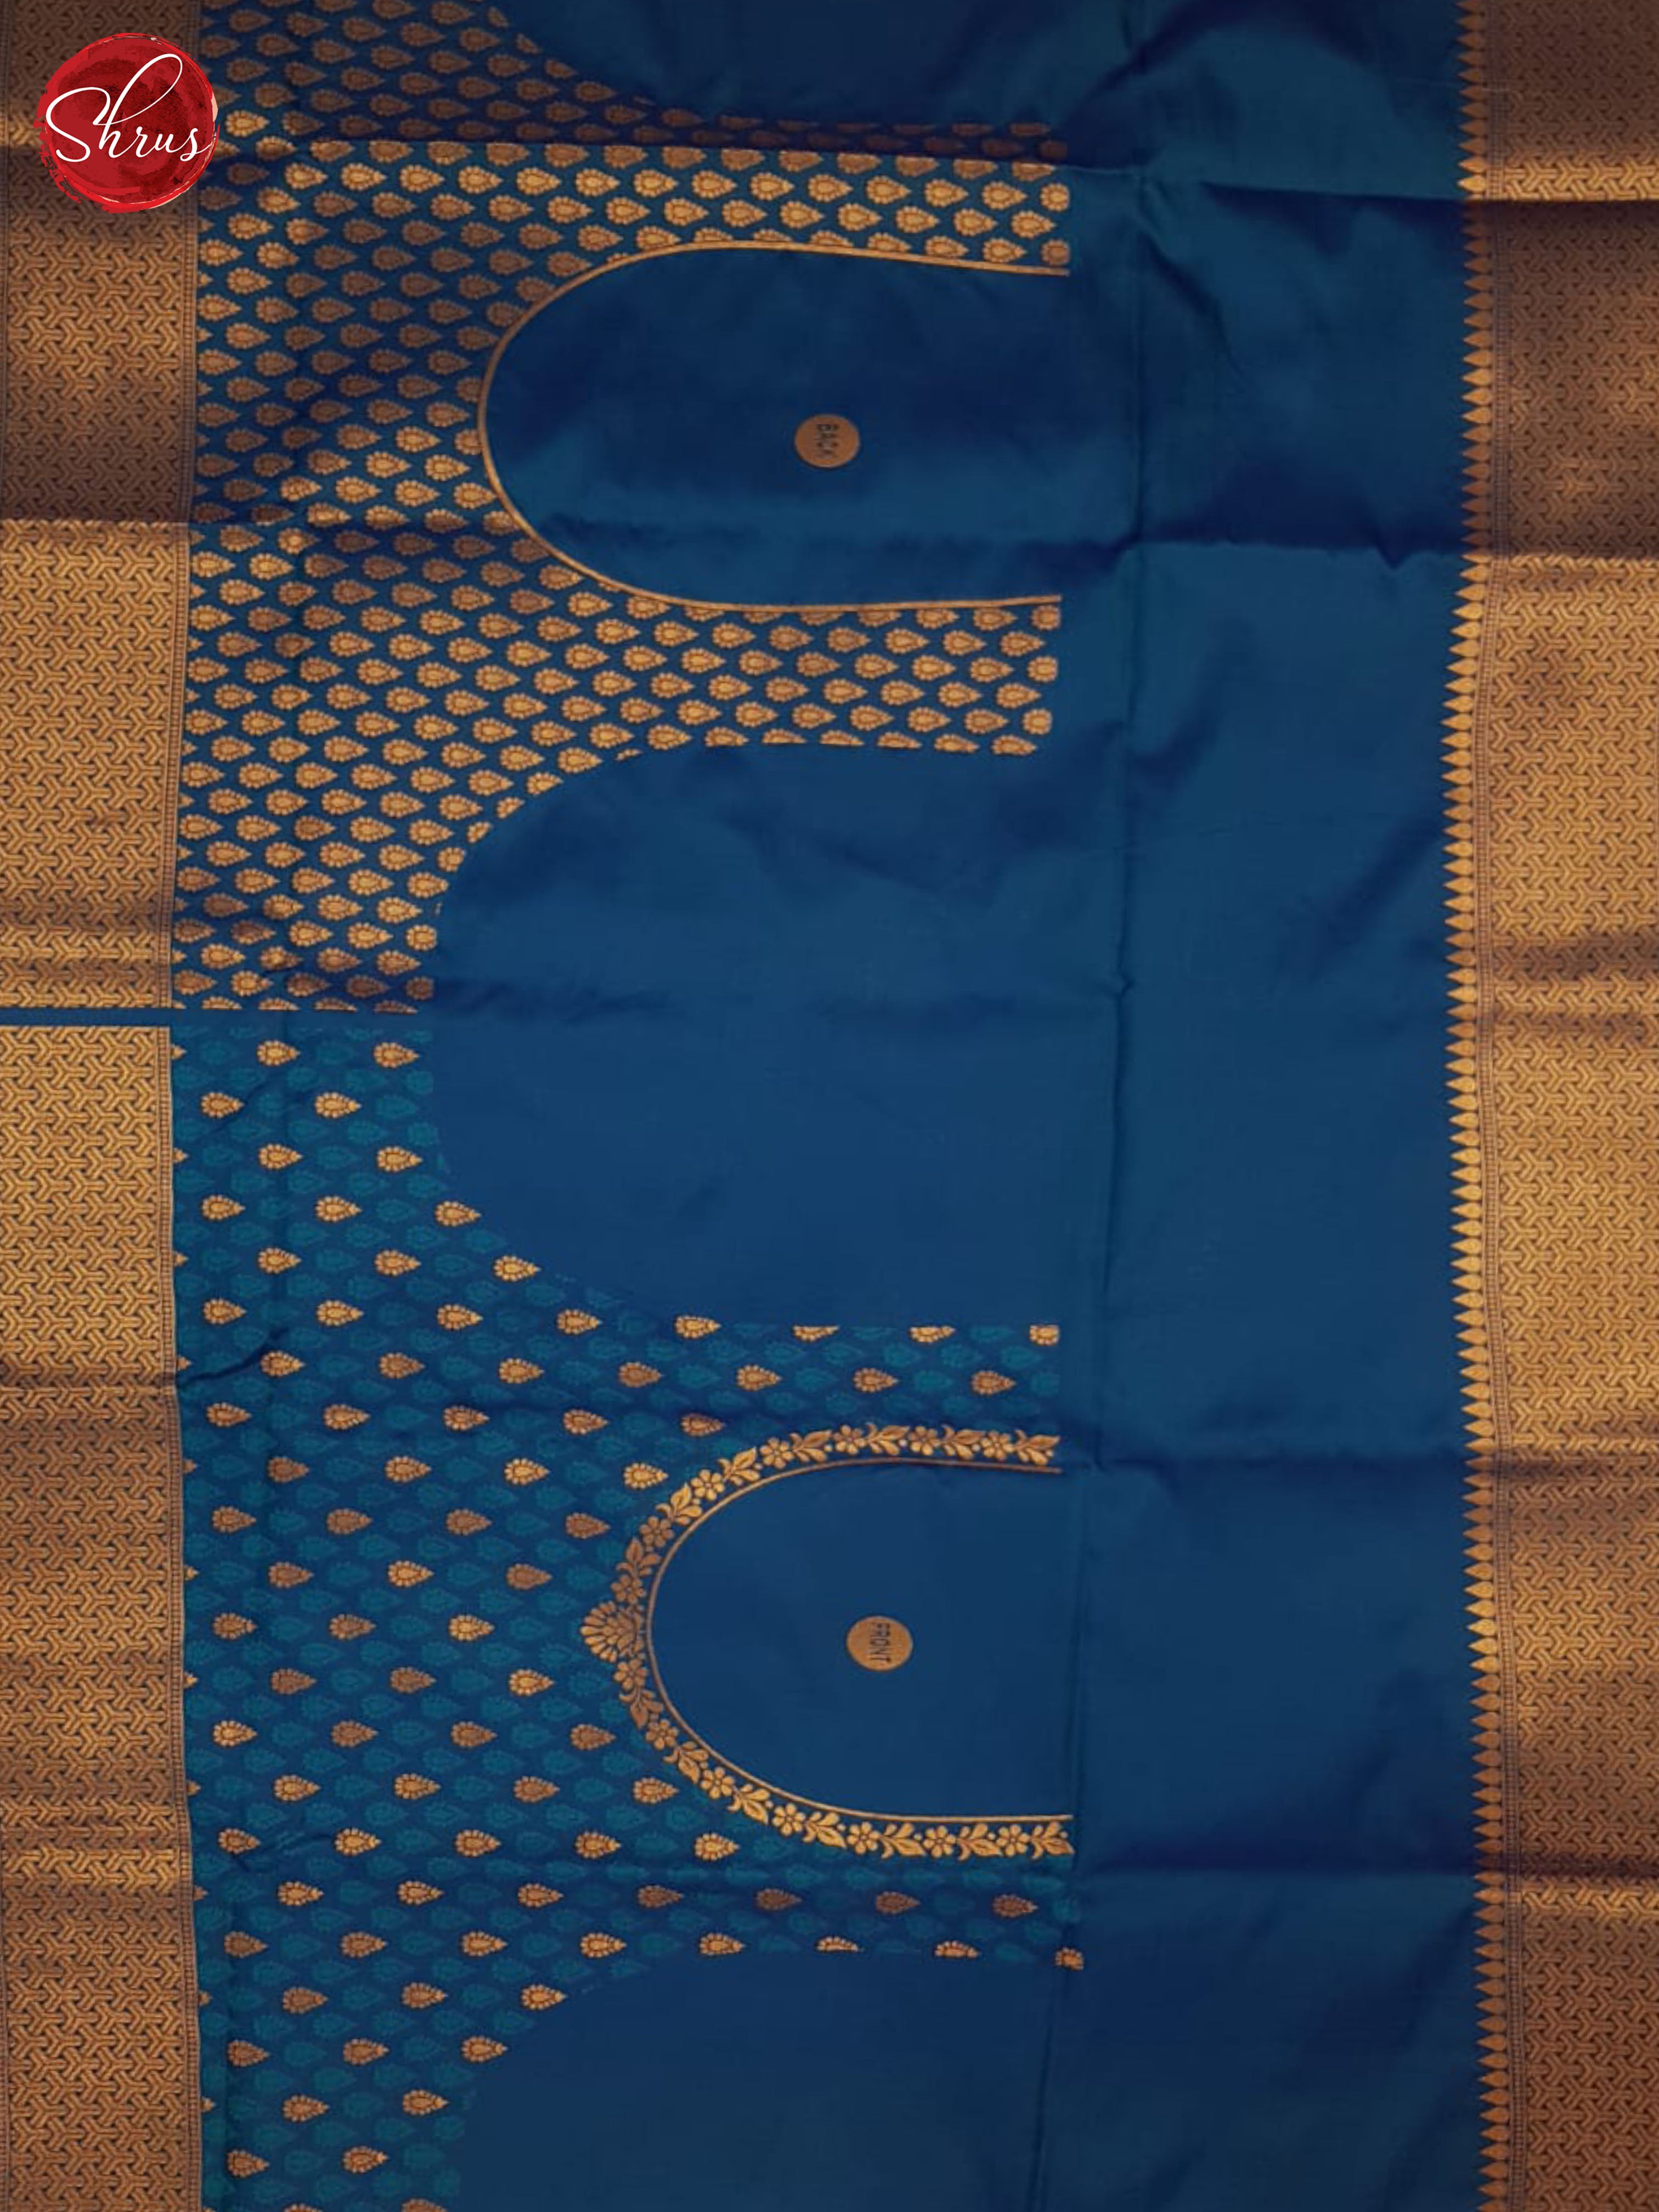 Blue(single tone)-Semi kanchipuram saree - Shop on ShrusEternity.com